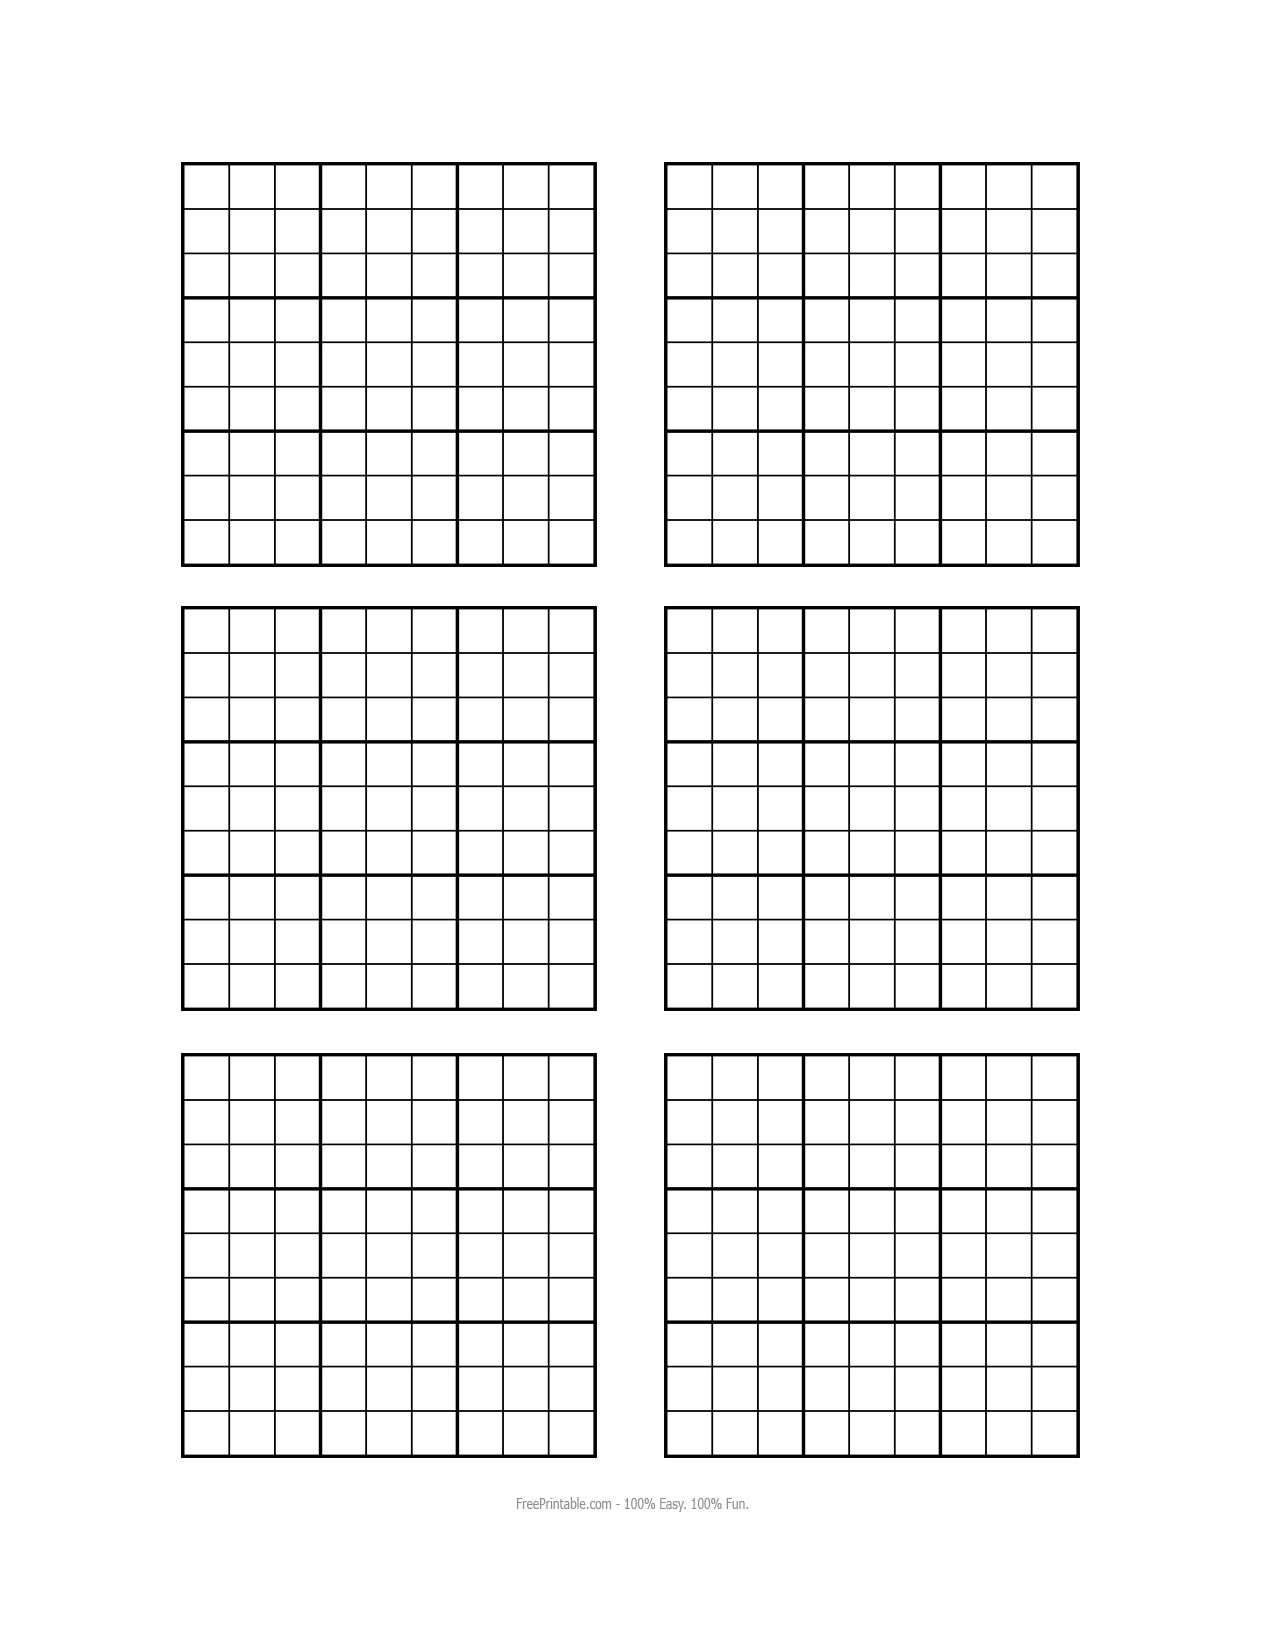 Free Printable Sudoku Puzzles 4 Per Page Sudoku Printable